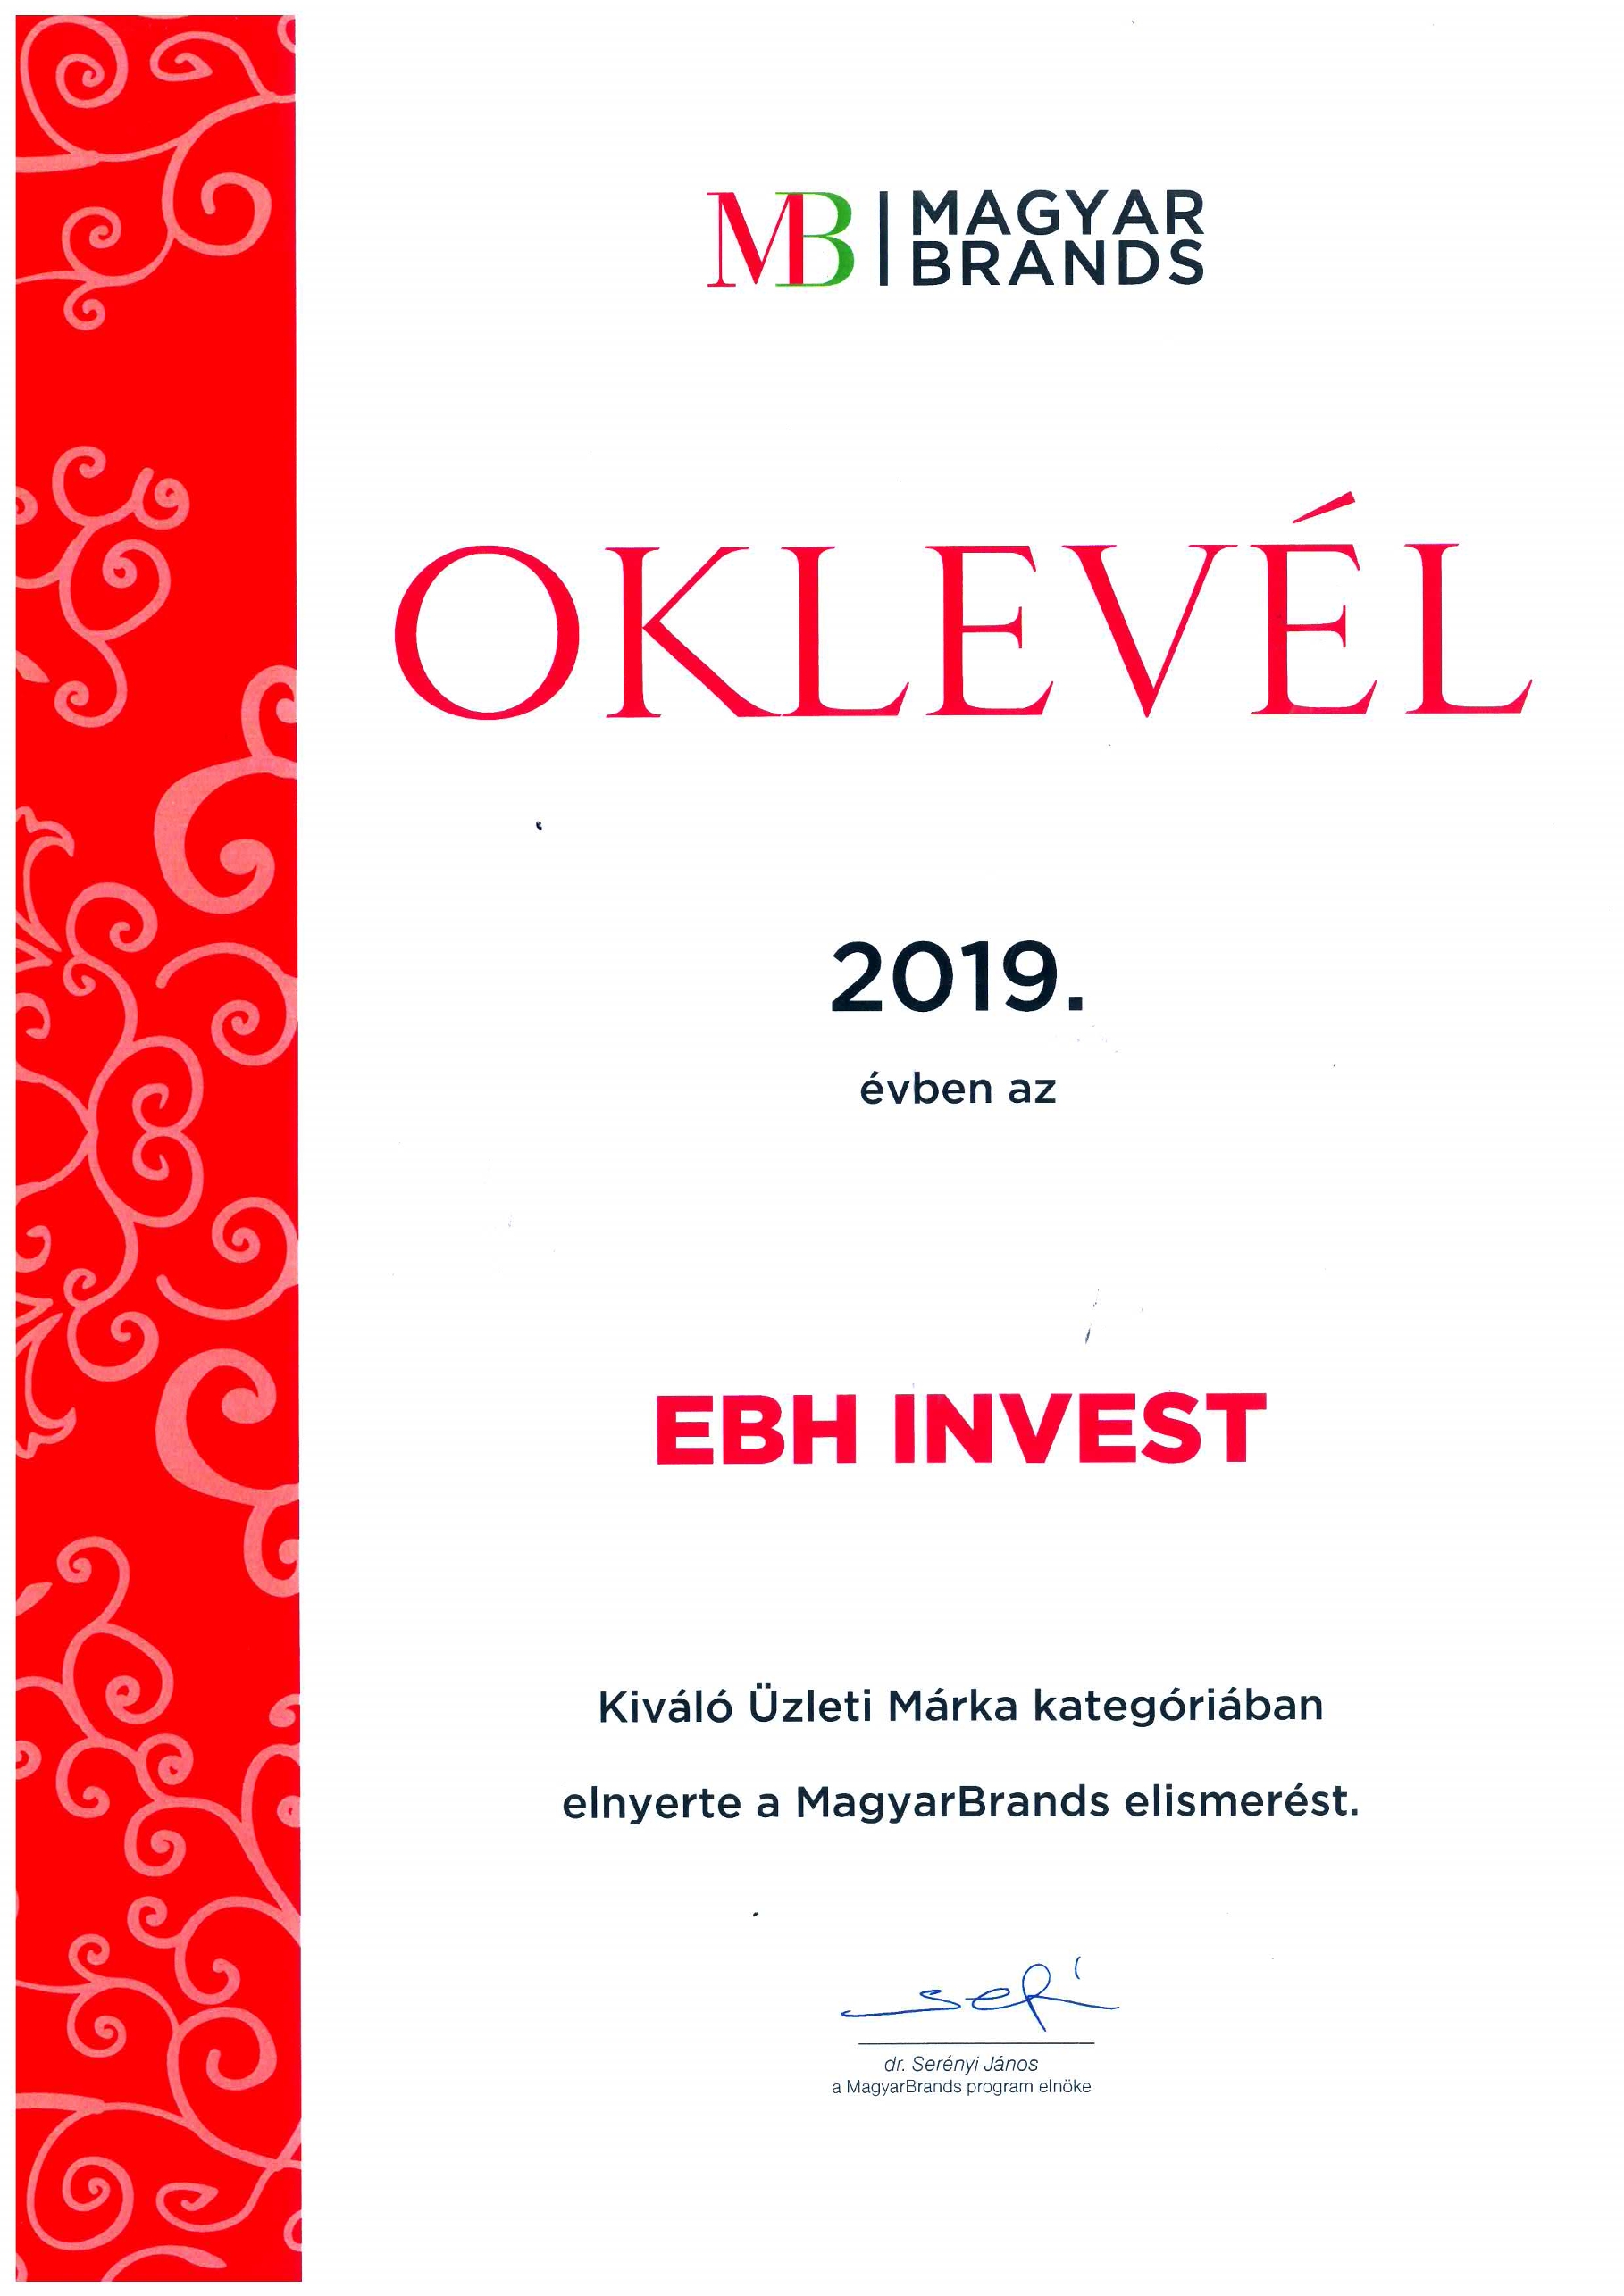 Immár harmadik alkalommal ismét díjazott lett az EB HUNGARY INVEST Kft. a MagyarBrands üzleti kategóriában.